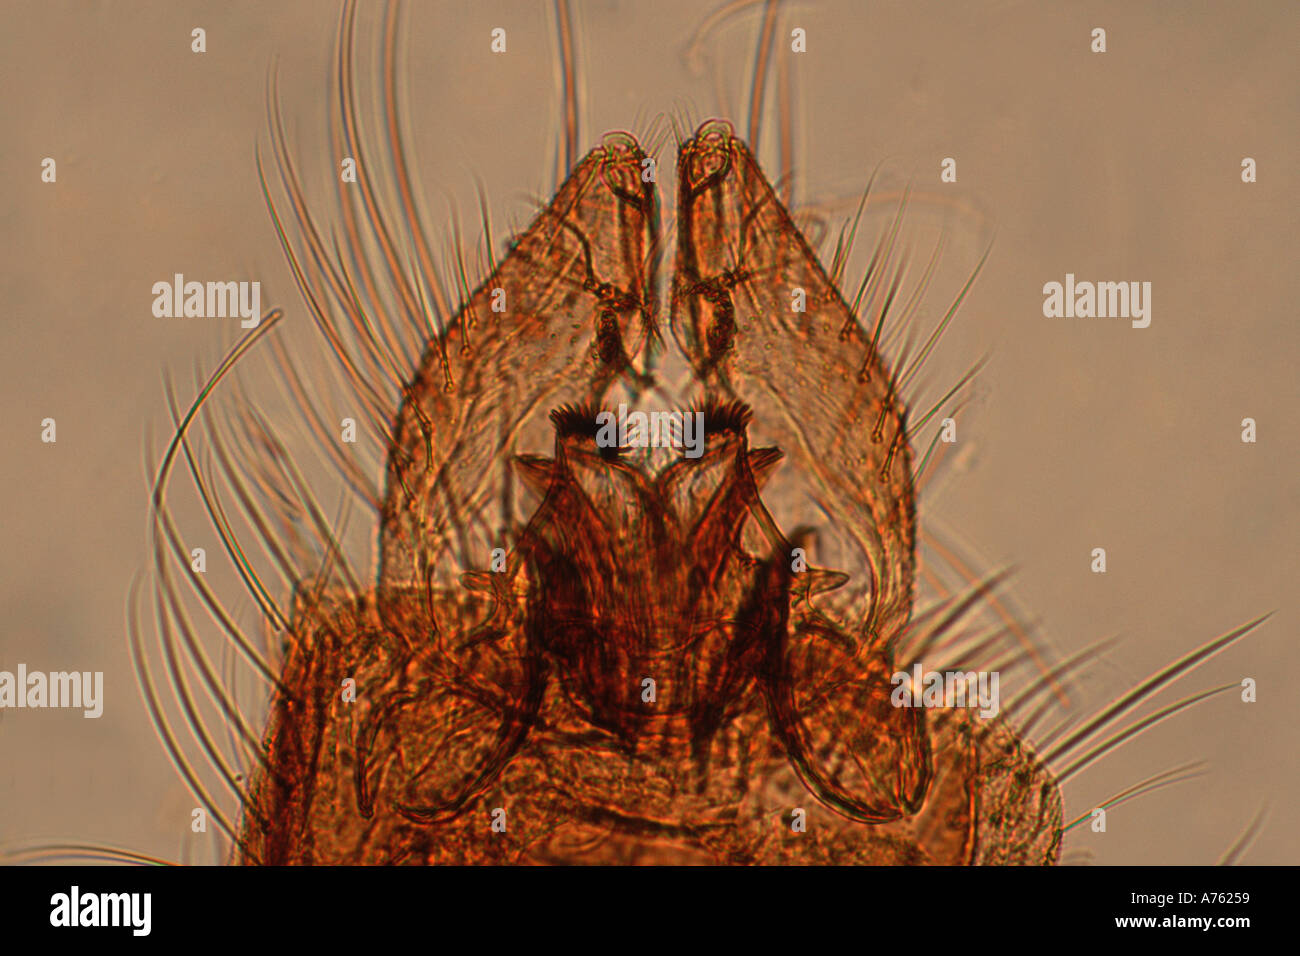 Male Culex pipiens common house mosquito genitalia microscope slide prepared Stock Photo